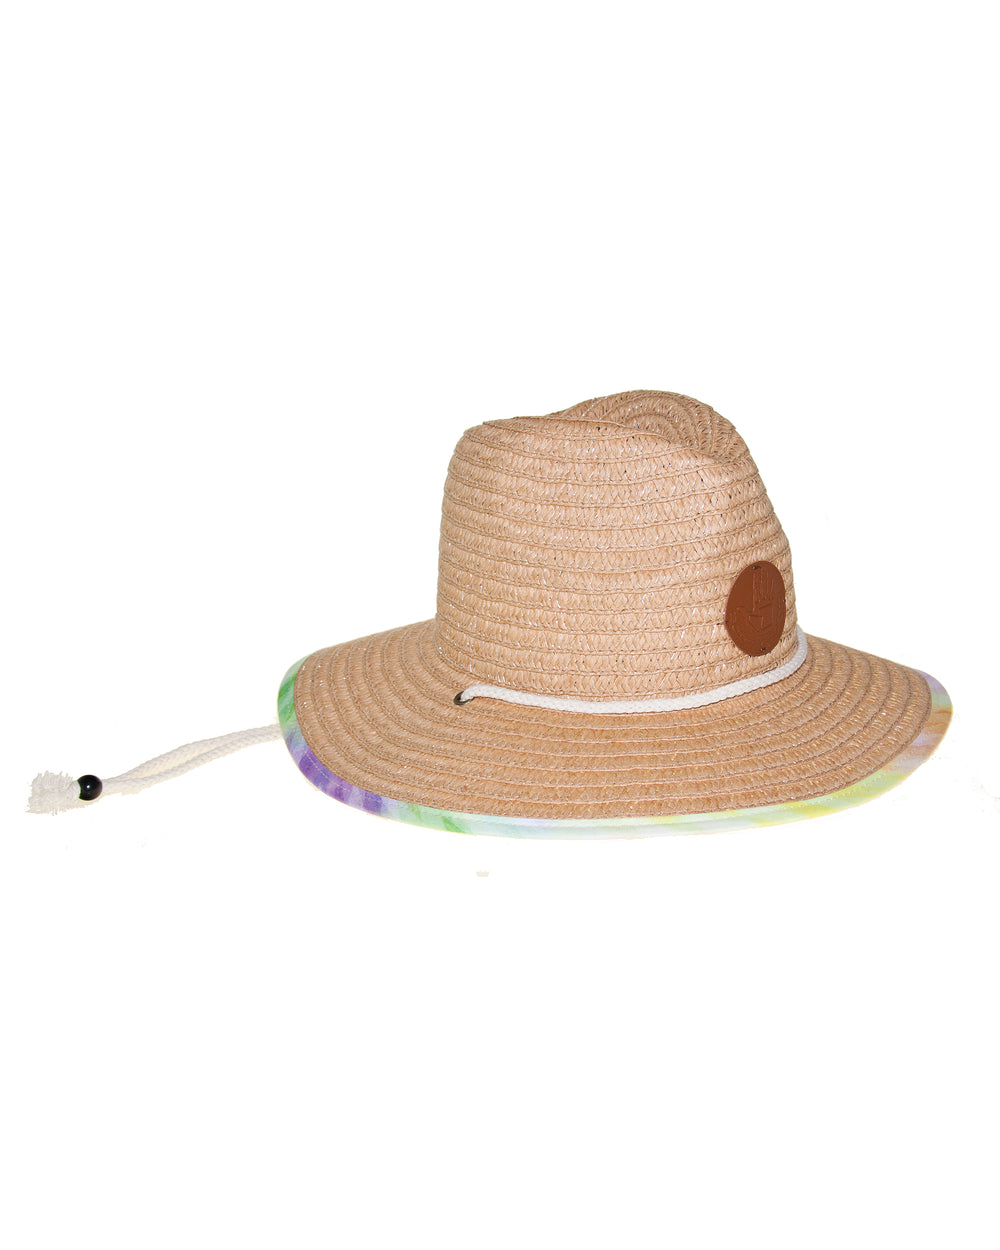 Novelty Straw Panama Hat - Kaleidoscope